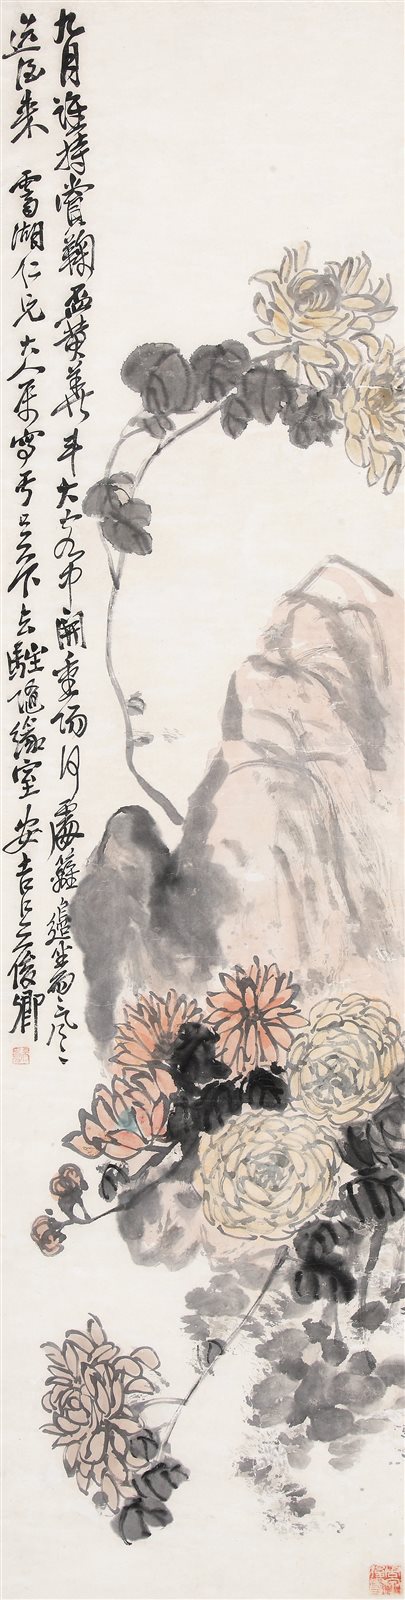 秋菊寿石图